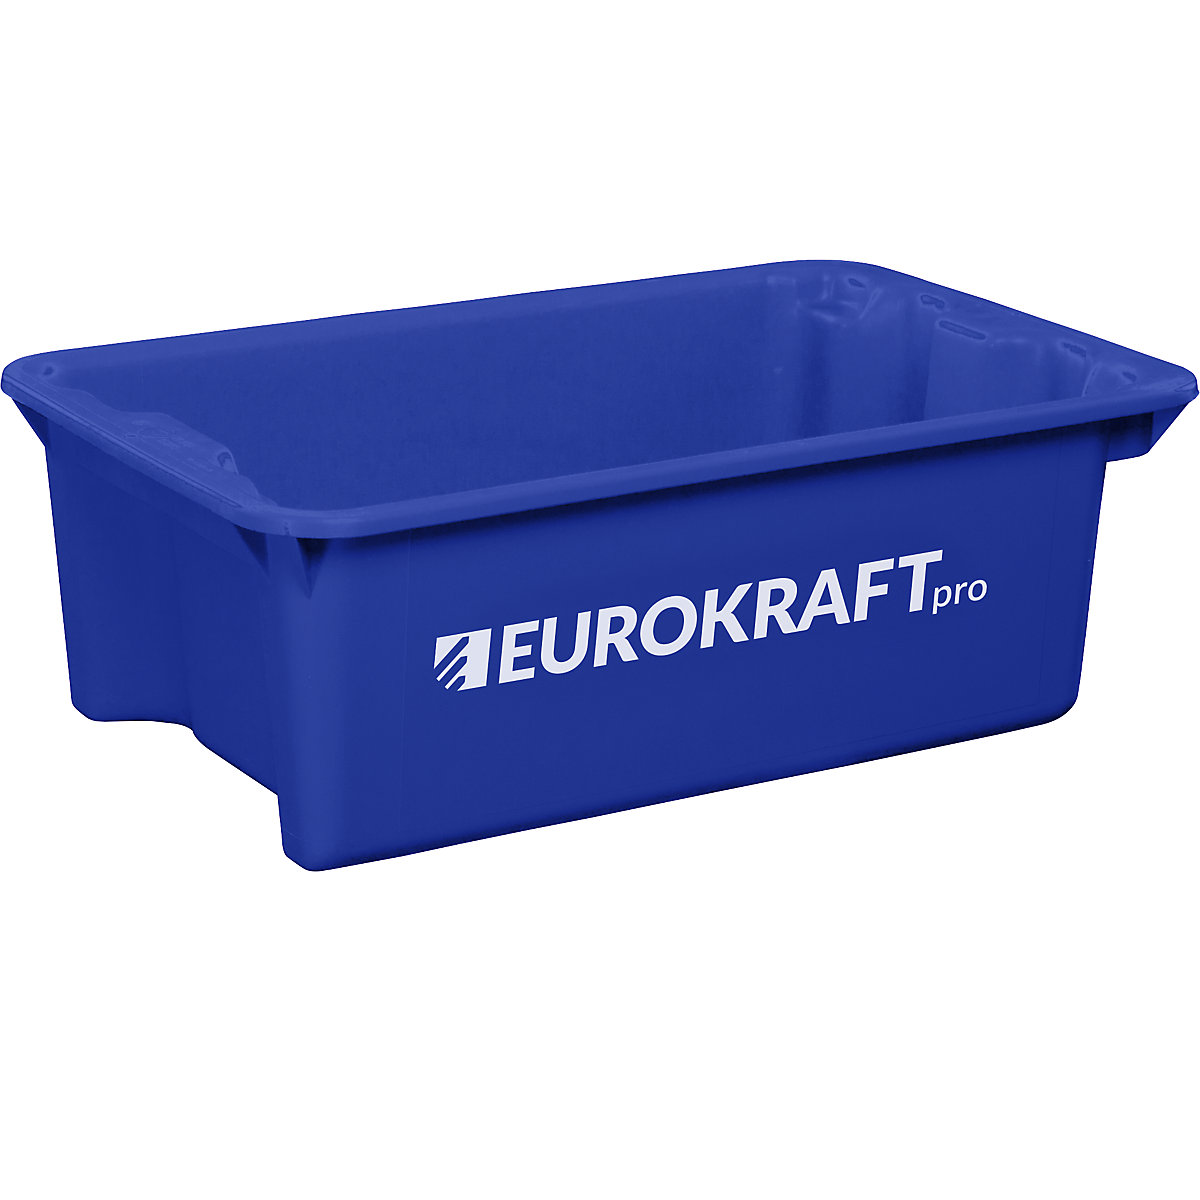 EUROKRAFTpro Drehstapelbehälter aus lebensmittelechtem Polypropylen, Inhalt 34 Liter, VE 3 Stk, Wände und Boden geschlossen, blau